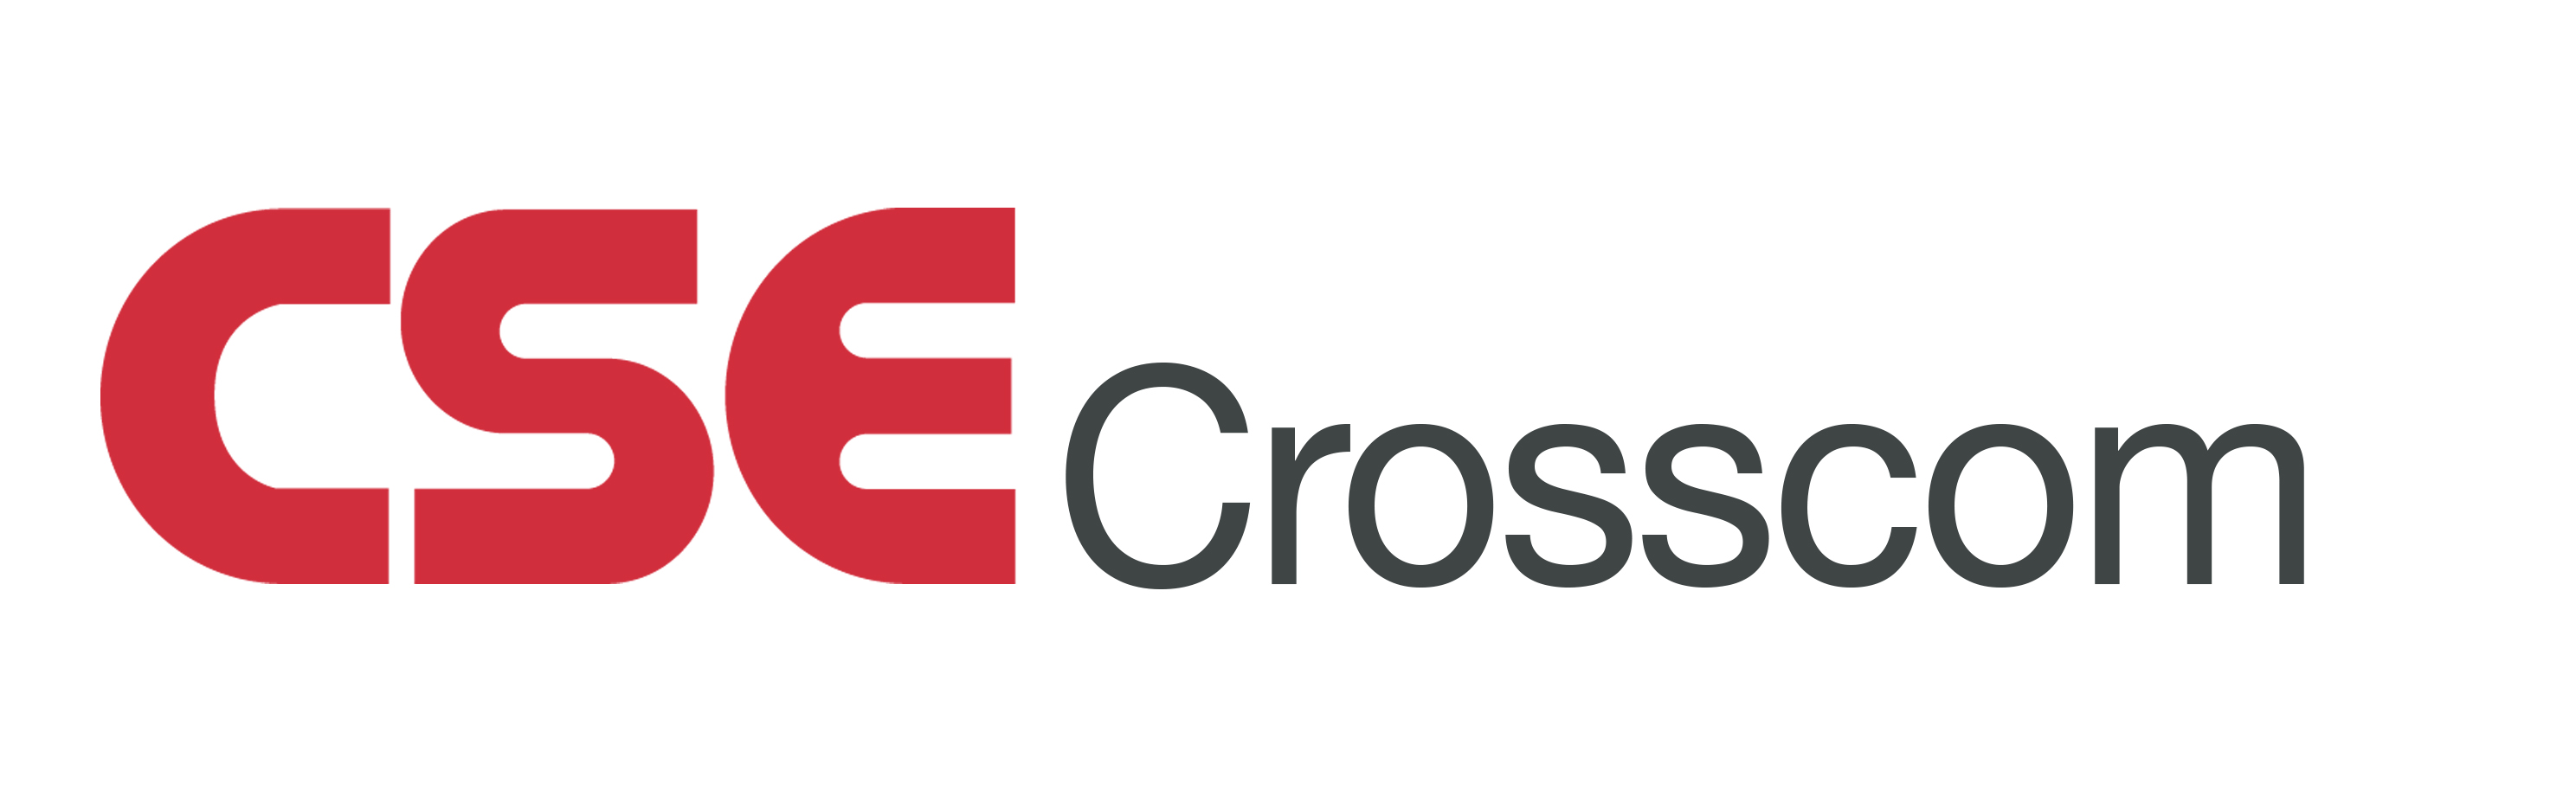 Crosscom - logo